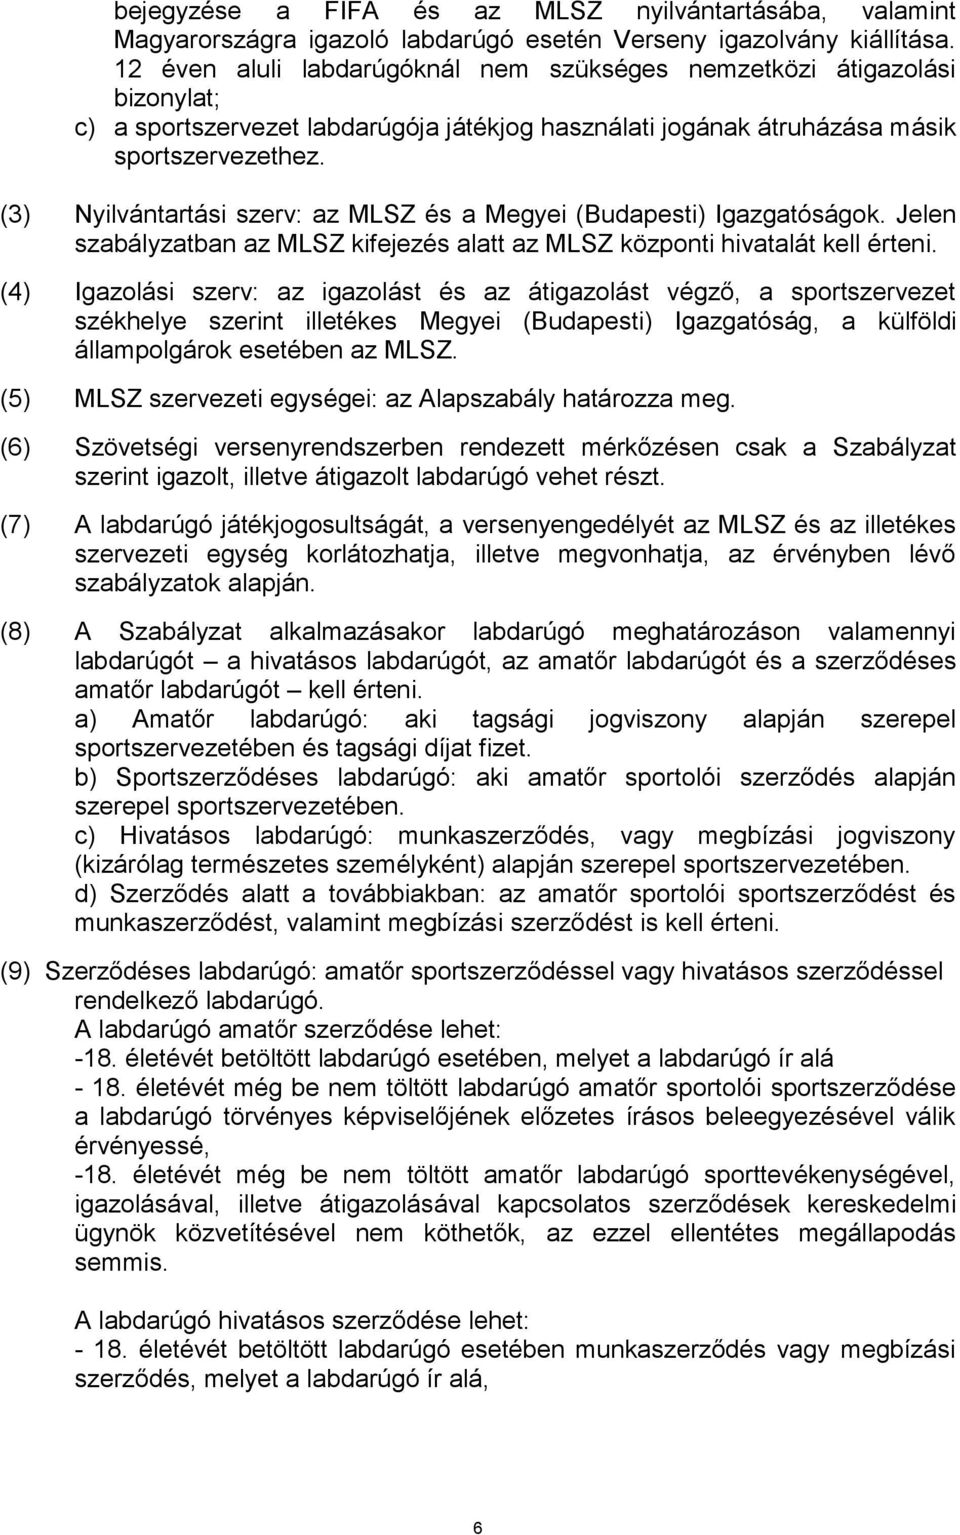 (3) Nyilvántartási szerv: az MLSZ és a Megyei (Budapesti) Igazgatóságok. Jelen szabályzatban az MLSZ kifejezés alatt az MLSZ központi hivatalát kell érteni.